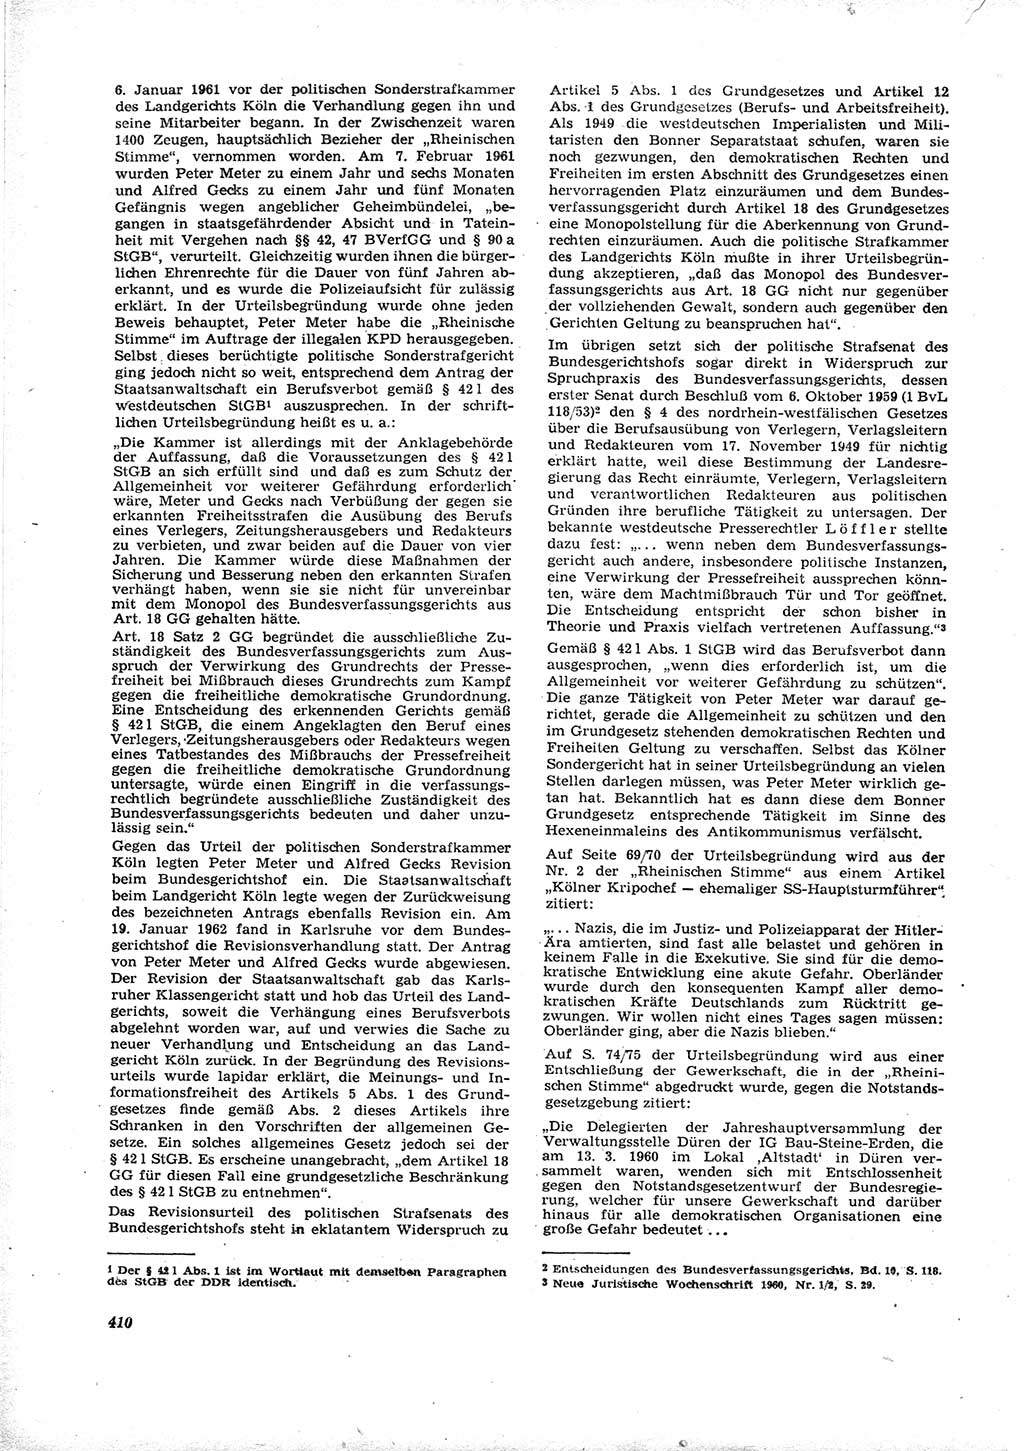 Neue Justiz (NJ), Zeitschrift für Recht und Rechtswissenschaft [Deutsche Demokratische Republik (DDR)], 16. Jahrgang 1962, Seite 410 (NJ DDR 1962, S. 410)